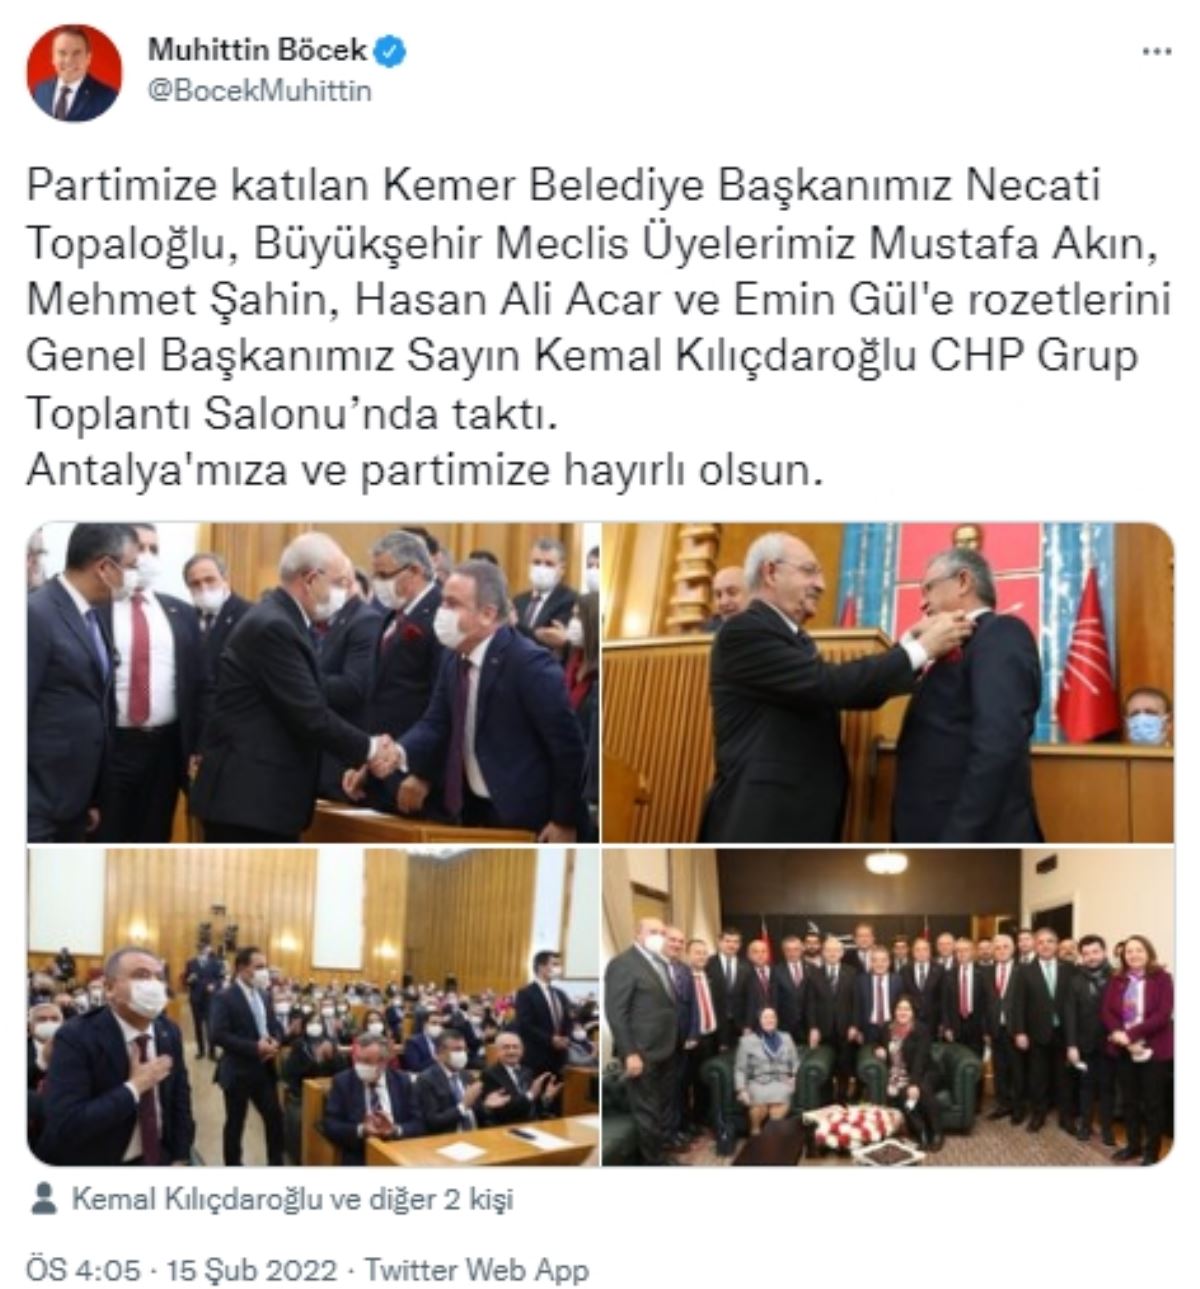 Kılıçdaroğlu rozeti taktı, Kemer Belediye Başkanı Necati Topaloğlu CHP'ye geçti